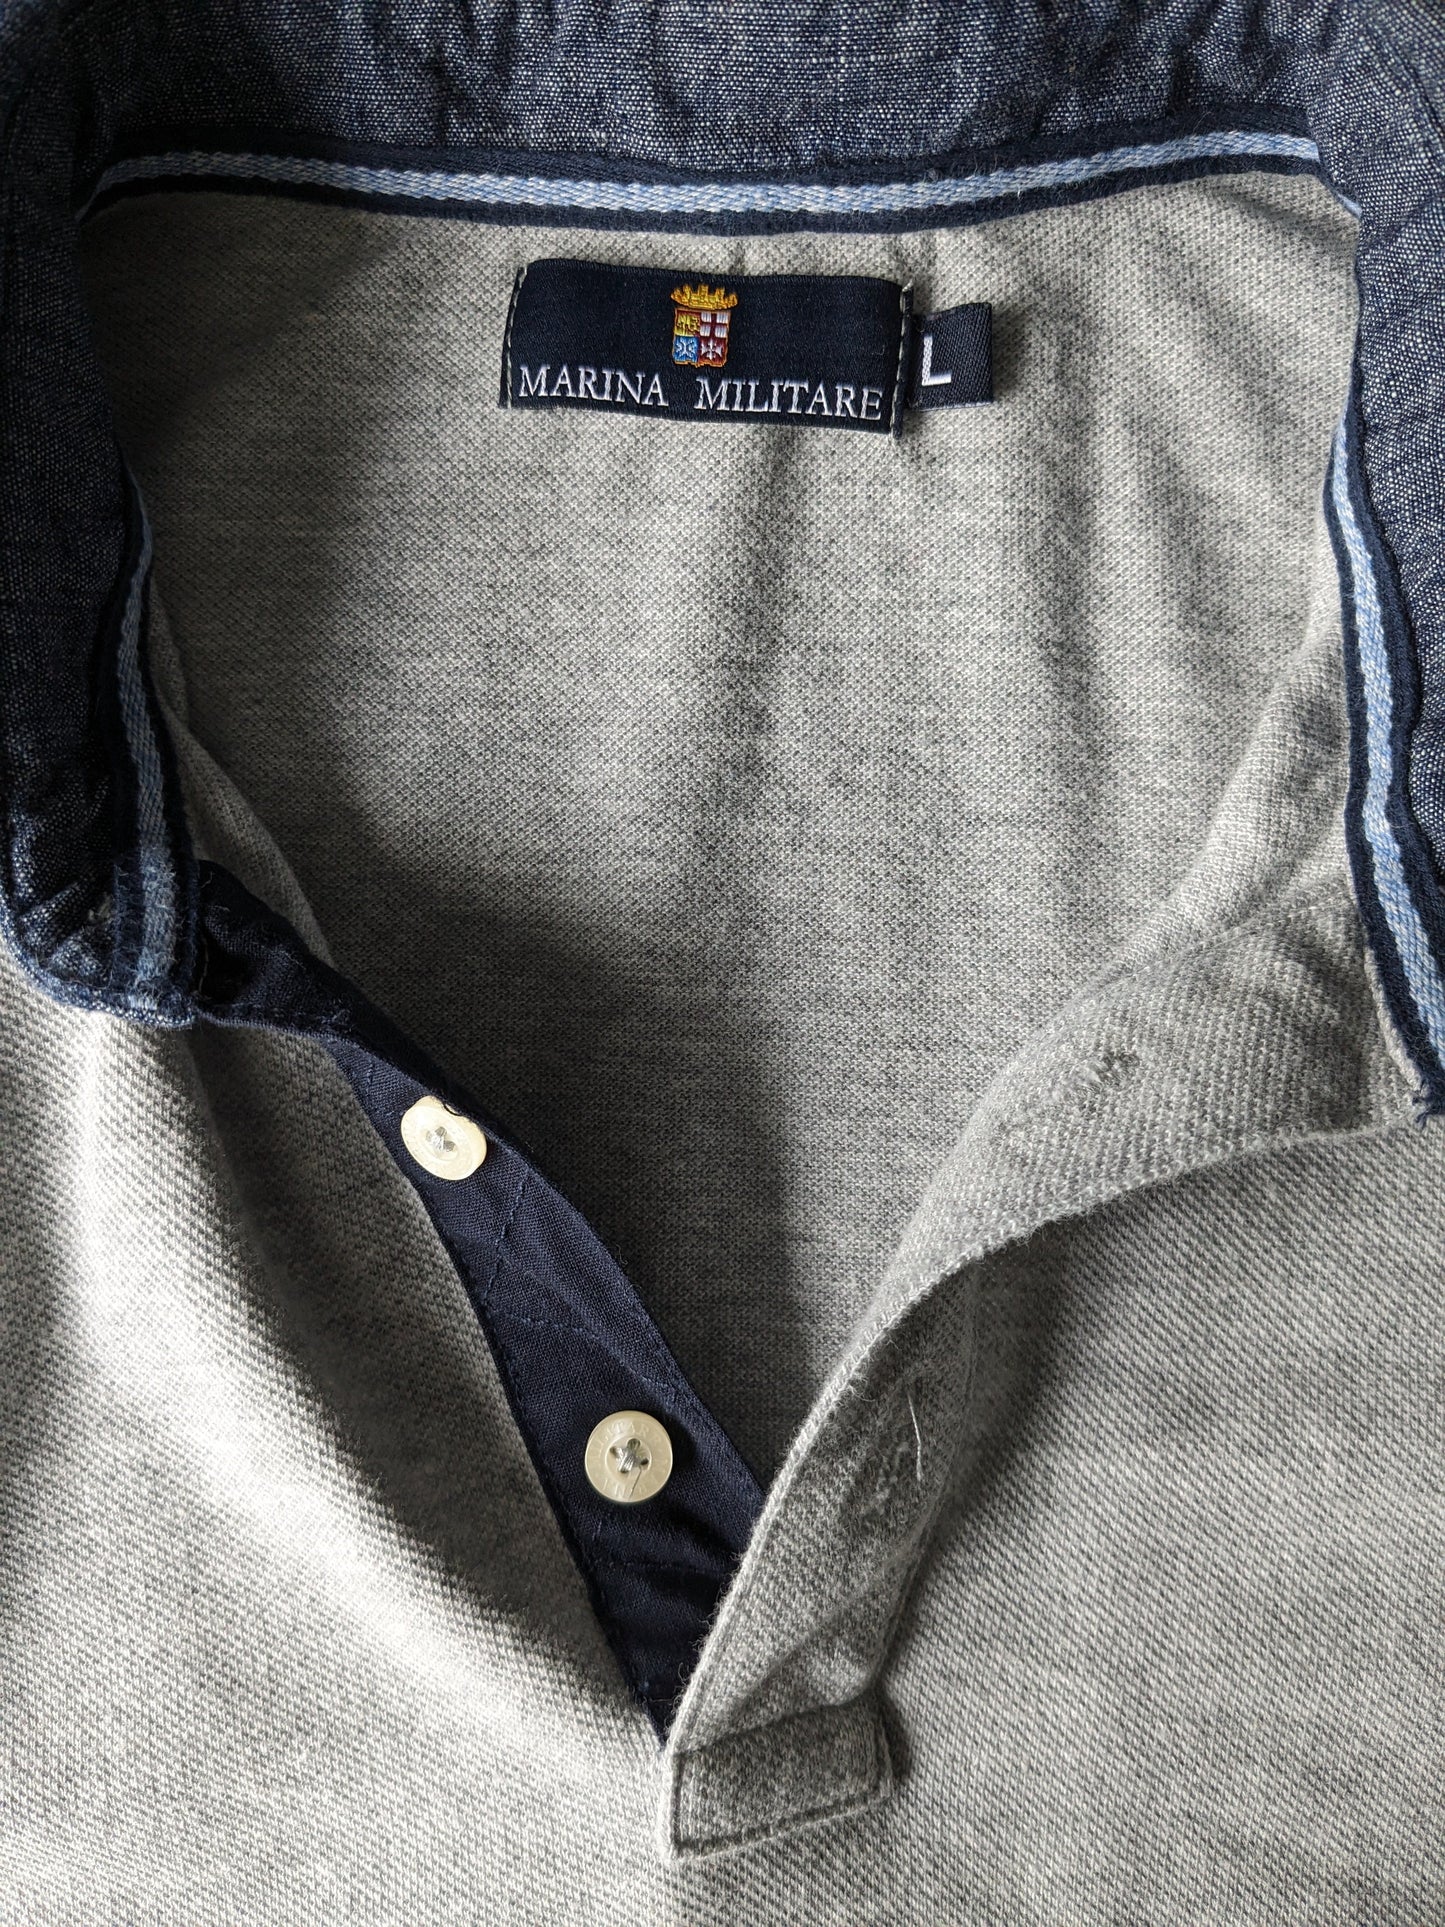 Marias Militärpolo -Pullover. Grau gemischt. Größe L.